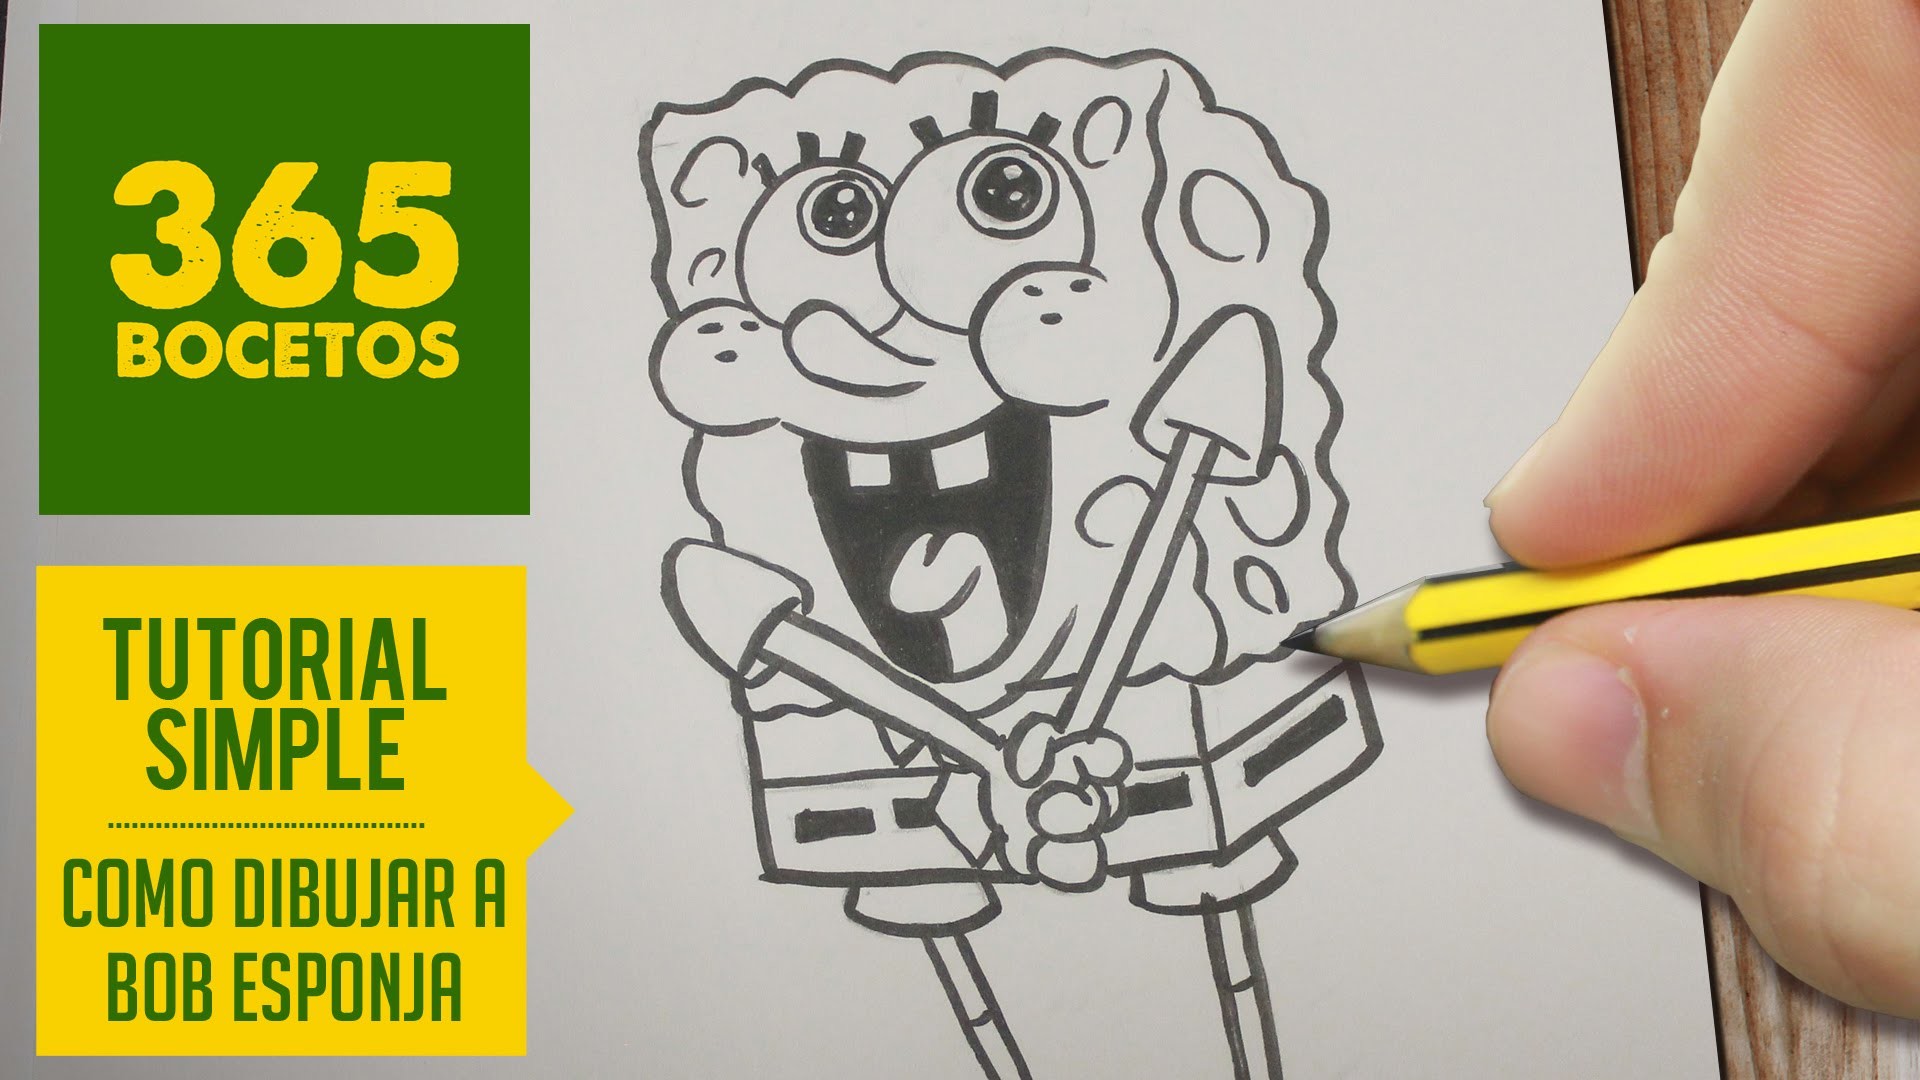 COMO DIBUJAR A BOB ESPONJA PASO A PASO - How to draw Spongebob Squarepants